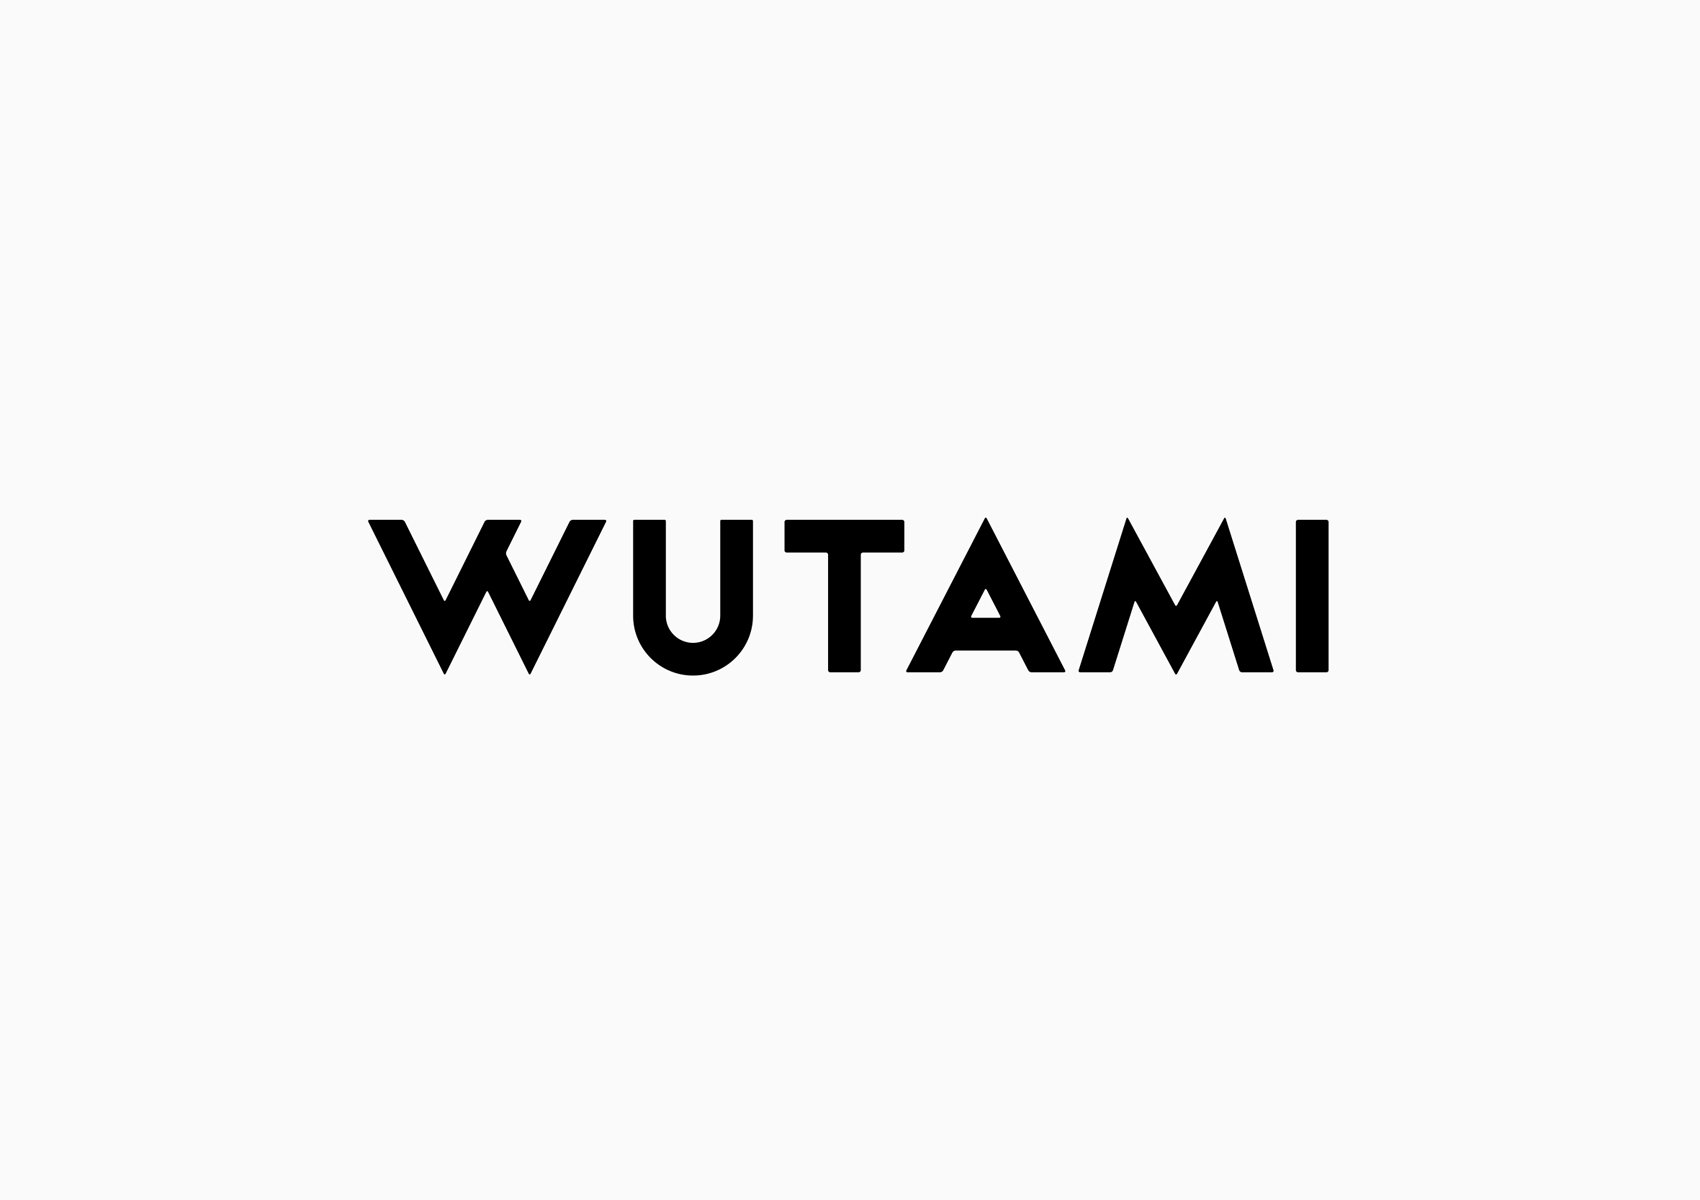 WUTAMI logo